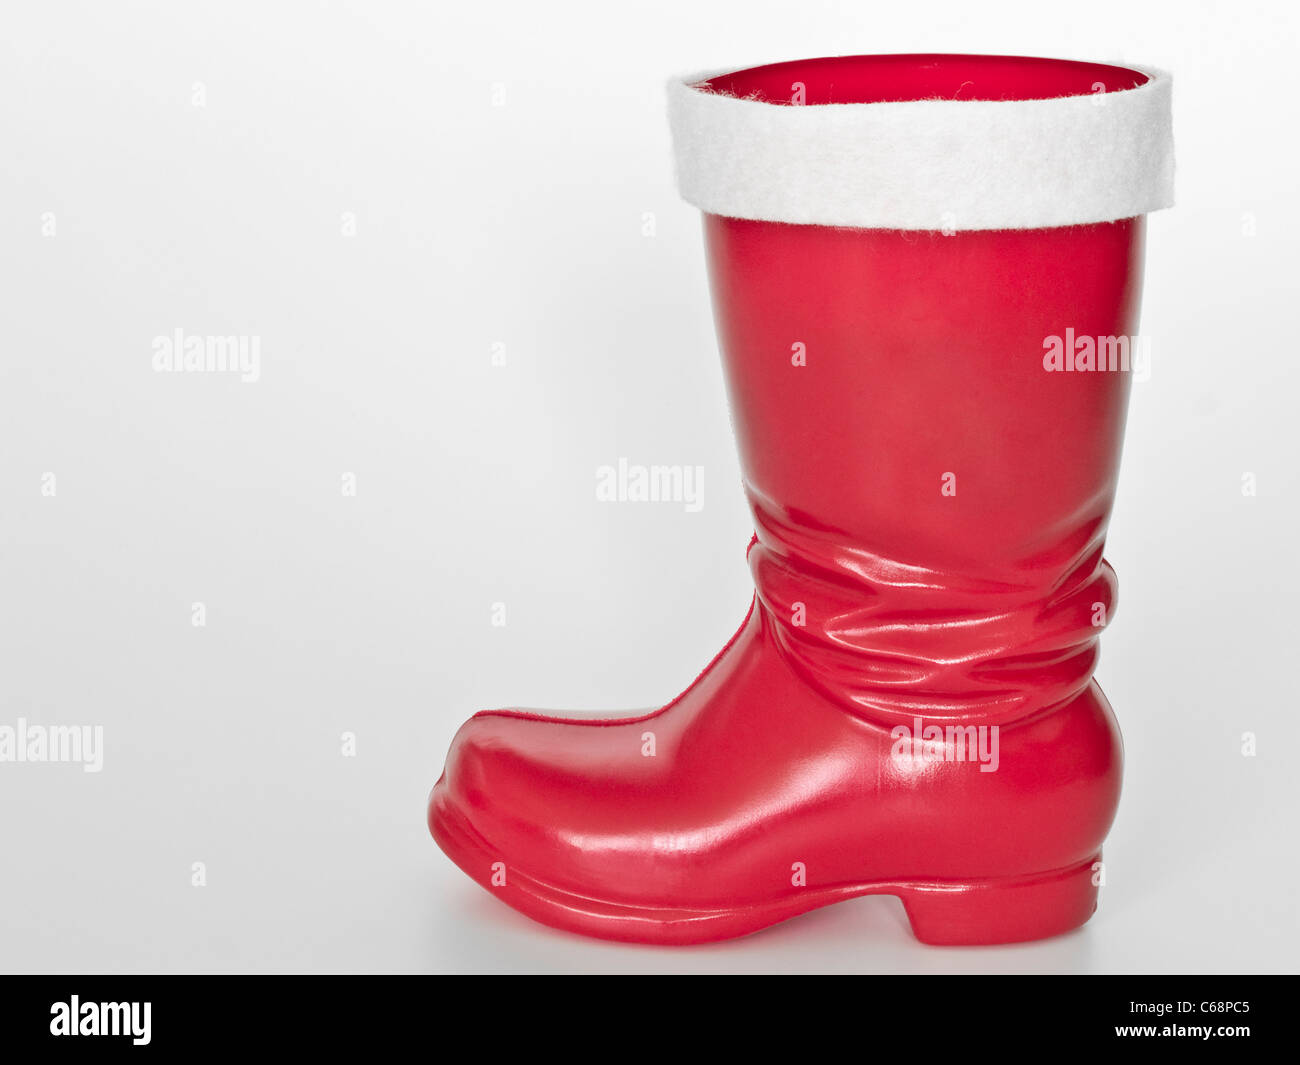 Detailansicht eines Nikolausstiefel | Detail photo of a Nicholas boot Stock Photo